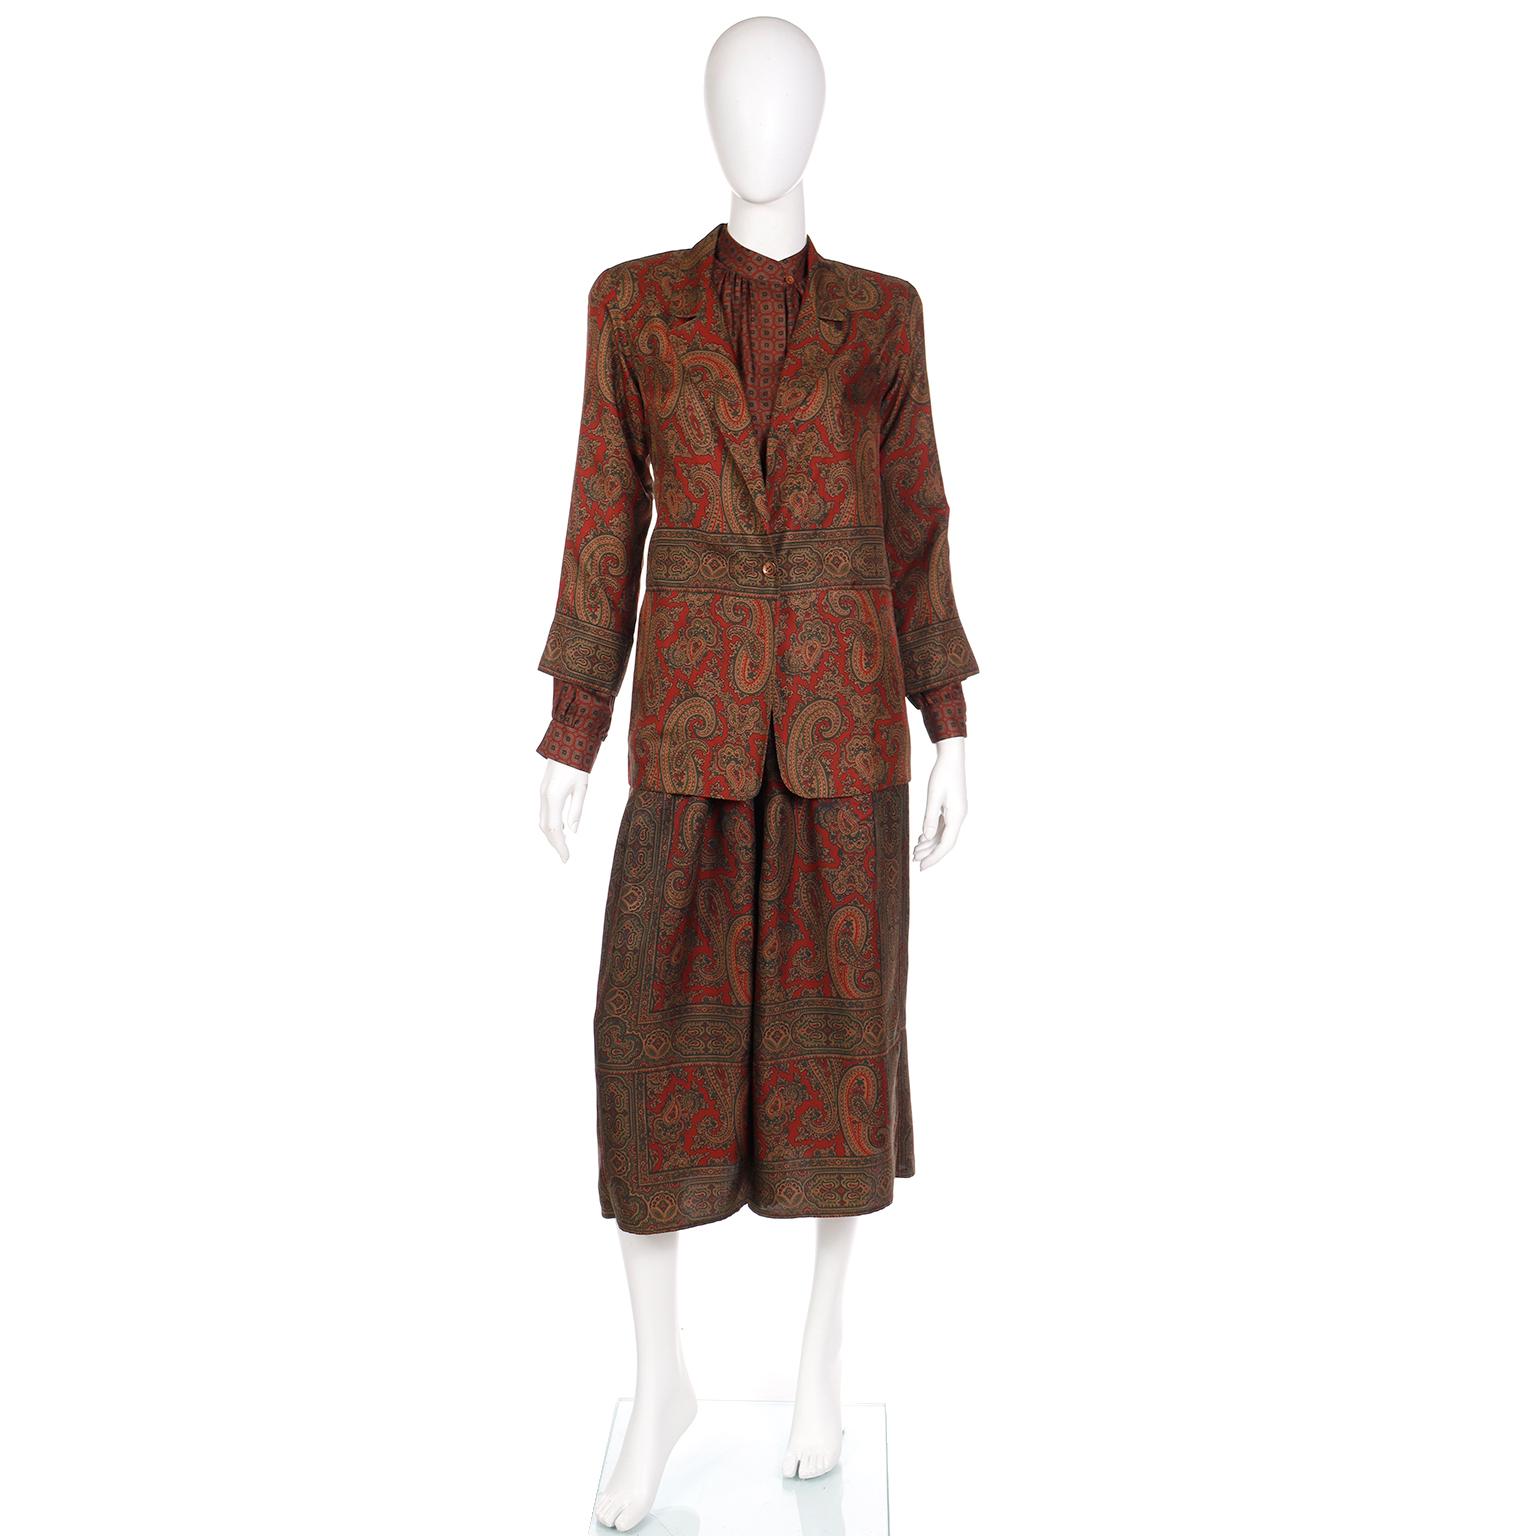 Dies ist eine schöne 3 Stück Anne Klein Outfit aus den späten 1970er Jahren. Entworfen während Donna Karans Zeit bei Anne Klein, ist dies ein vielseitiges Outfit, das als Ganzes oder als Einzelteile getragen werden kann. Das Ensemble besteht aus